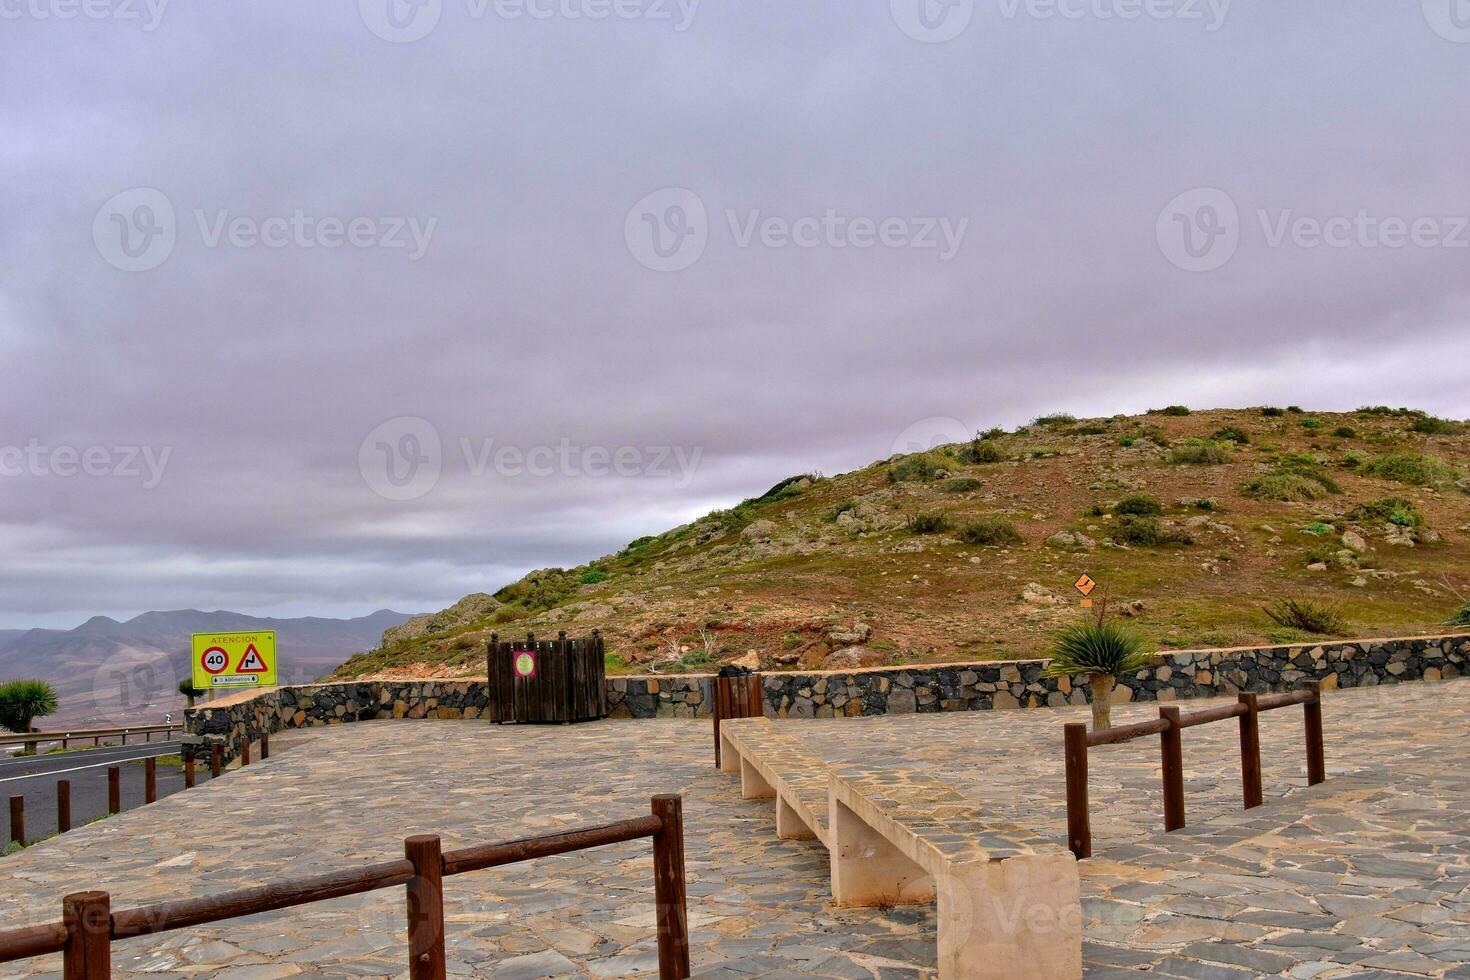 vide mystérieux montagneux paysage de le centre de le canari île Espagnol fuerteventura avec une nuageux ciel photo